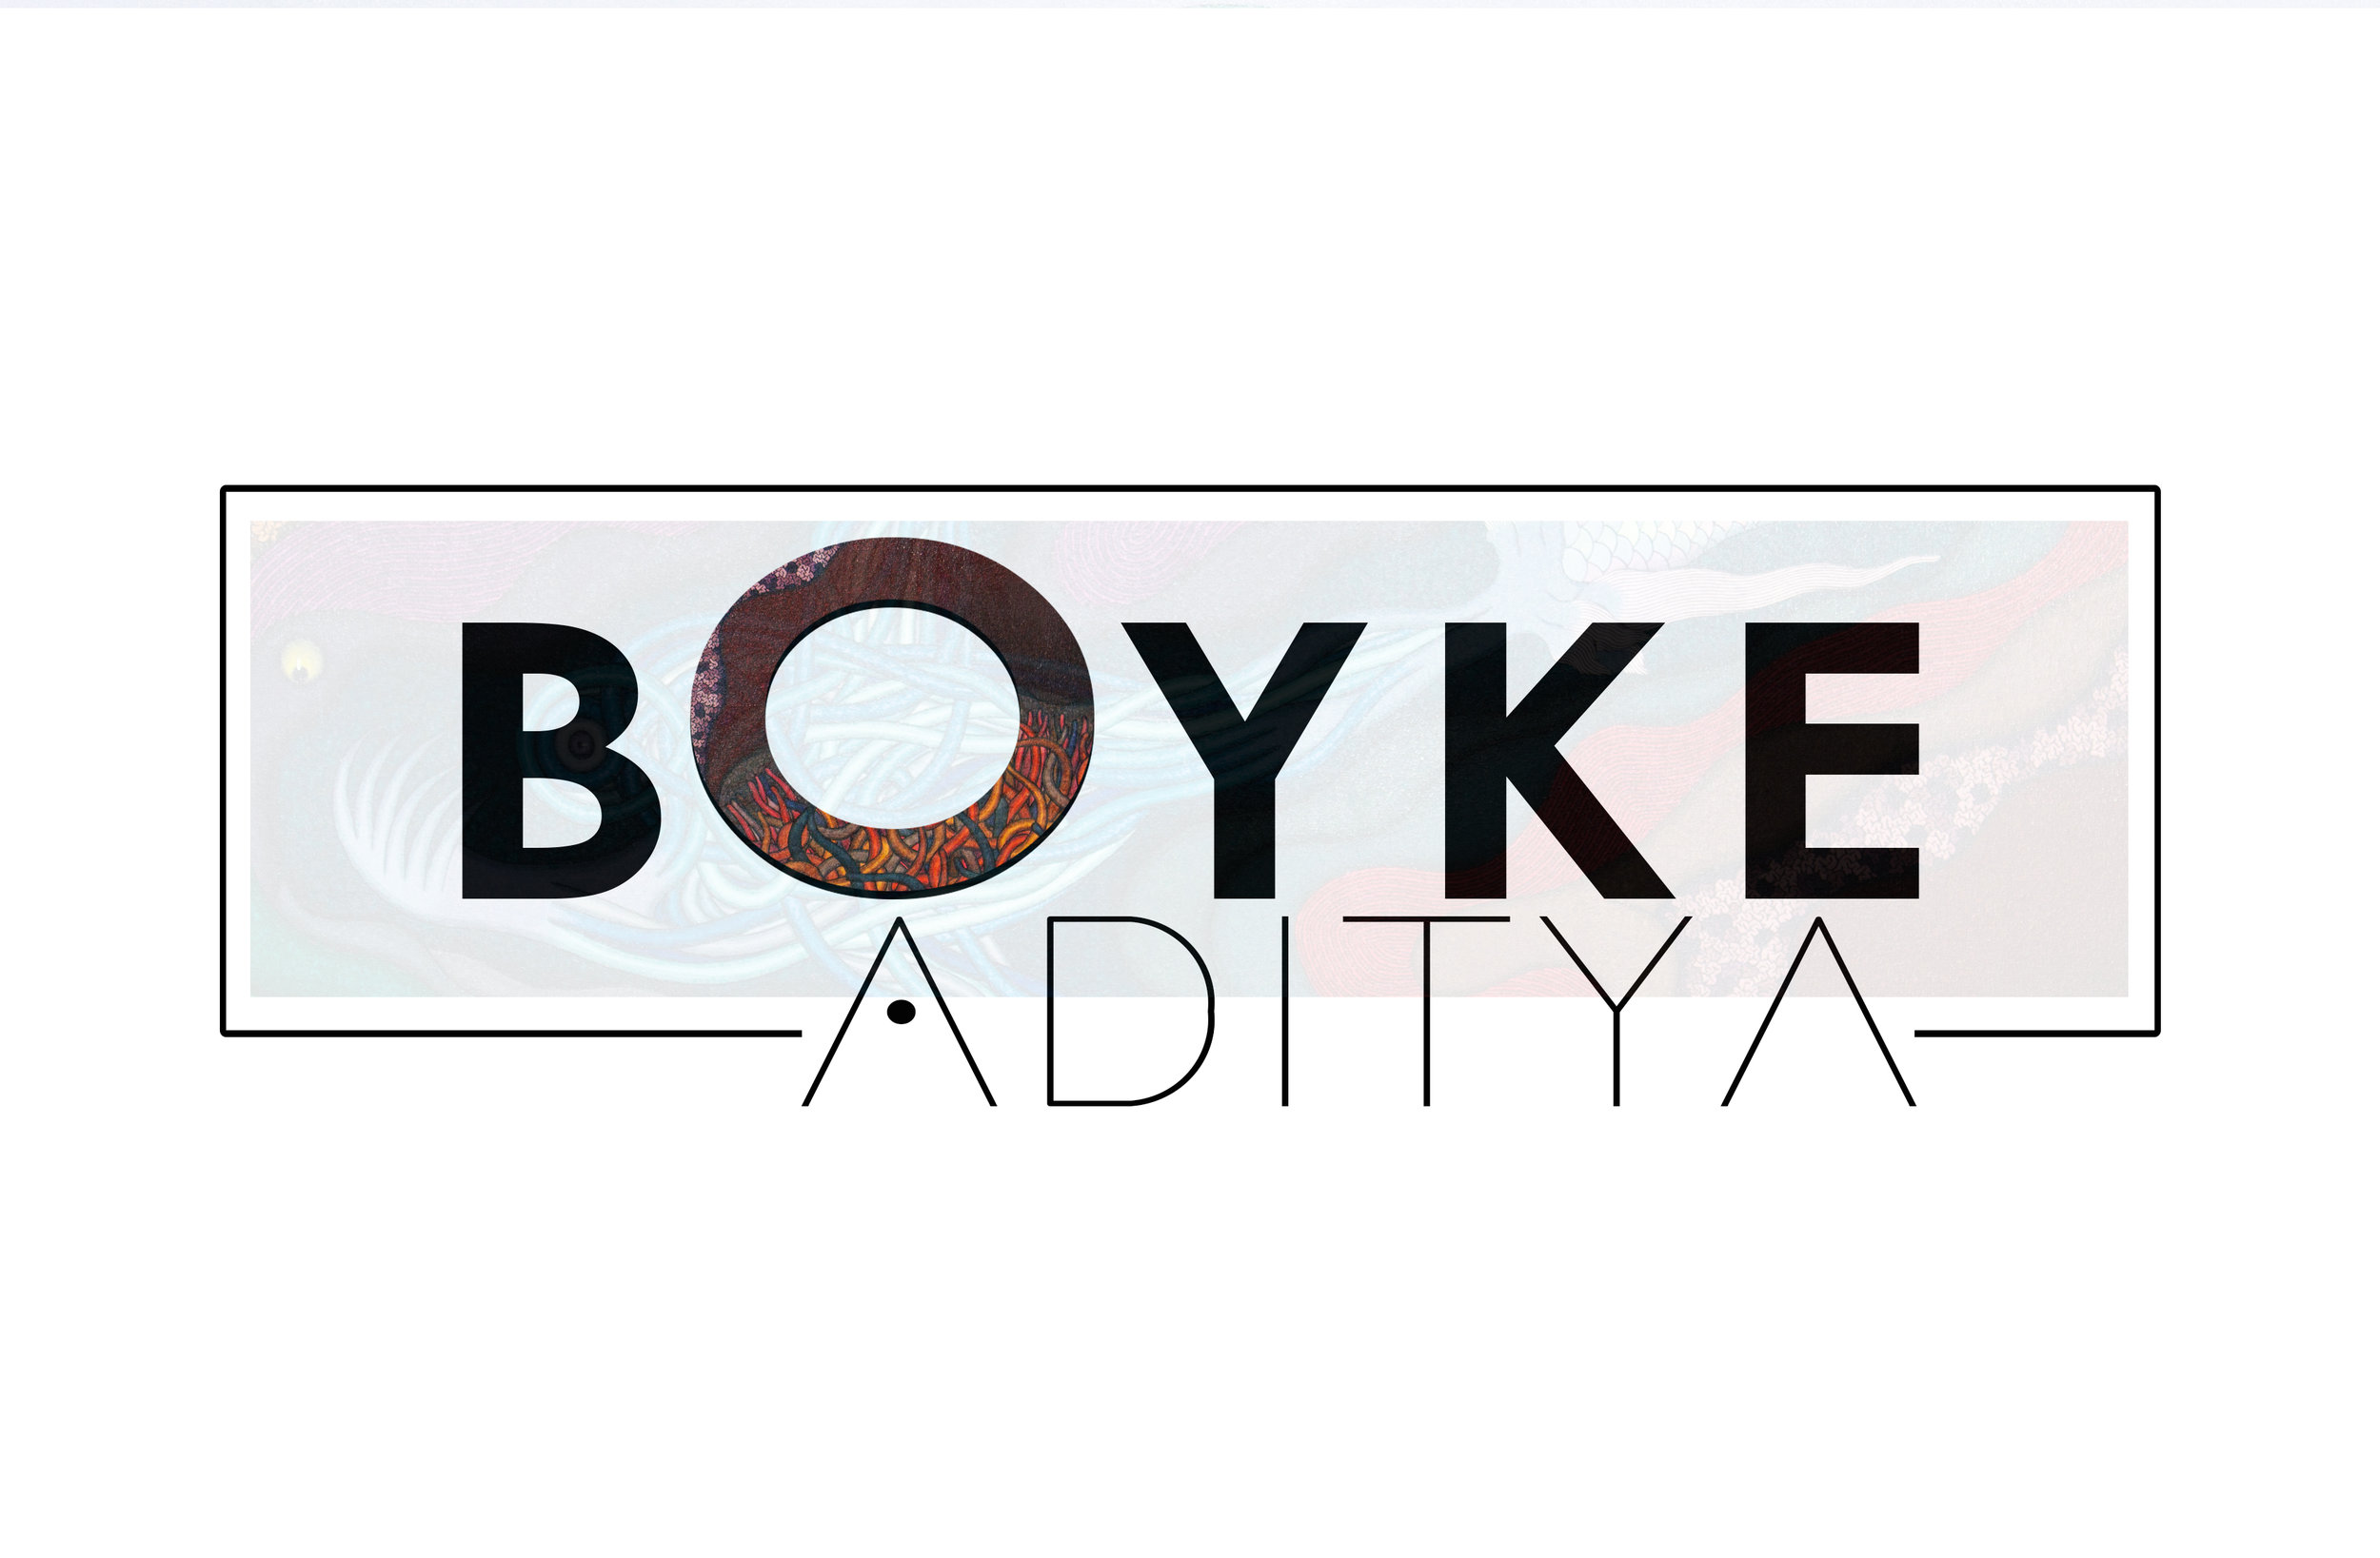 Boyke Aditya